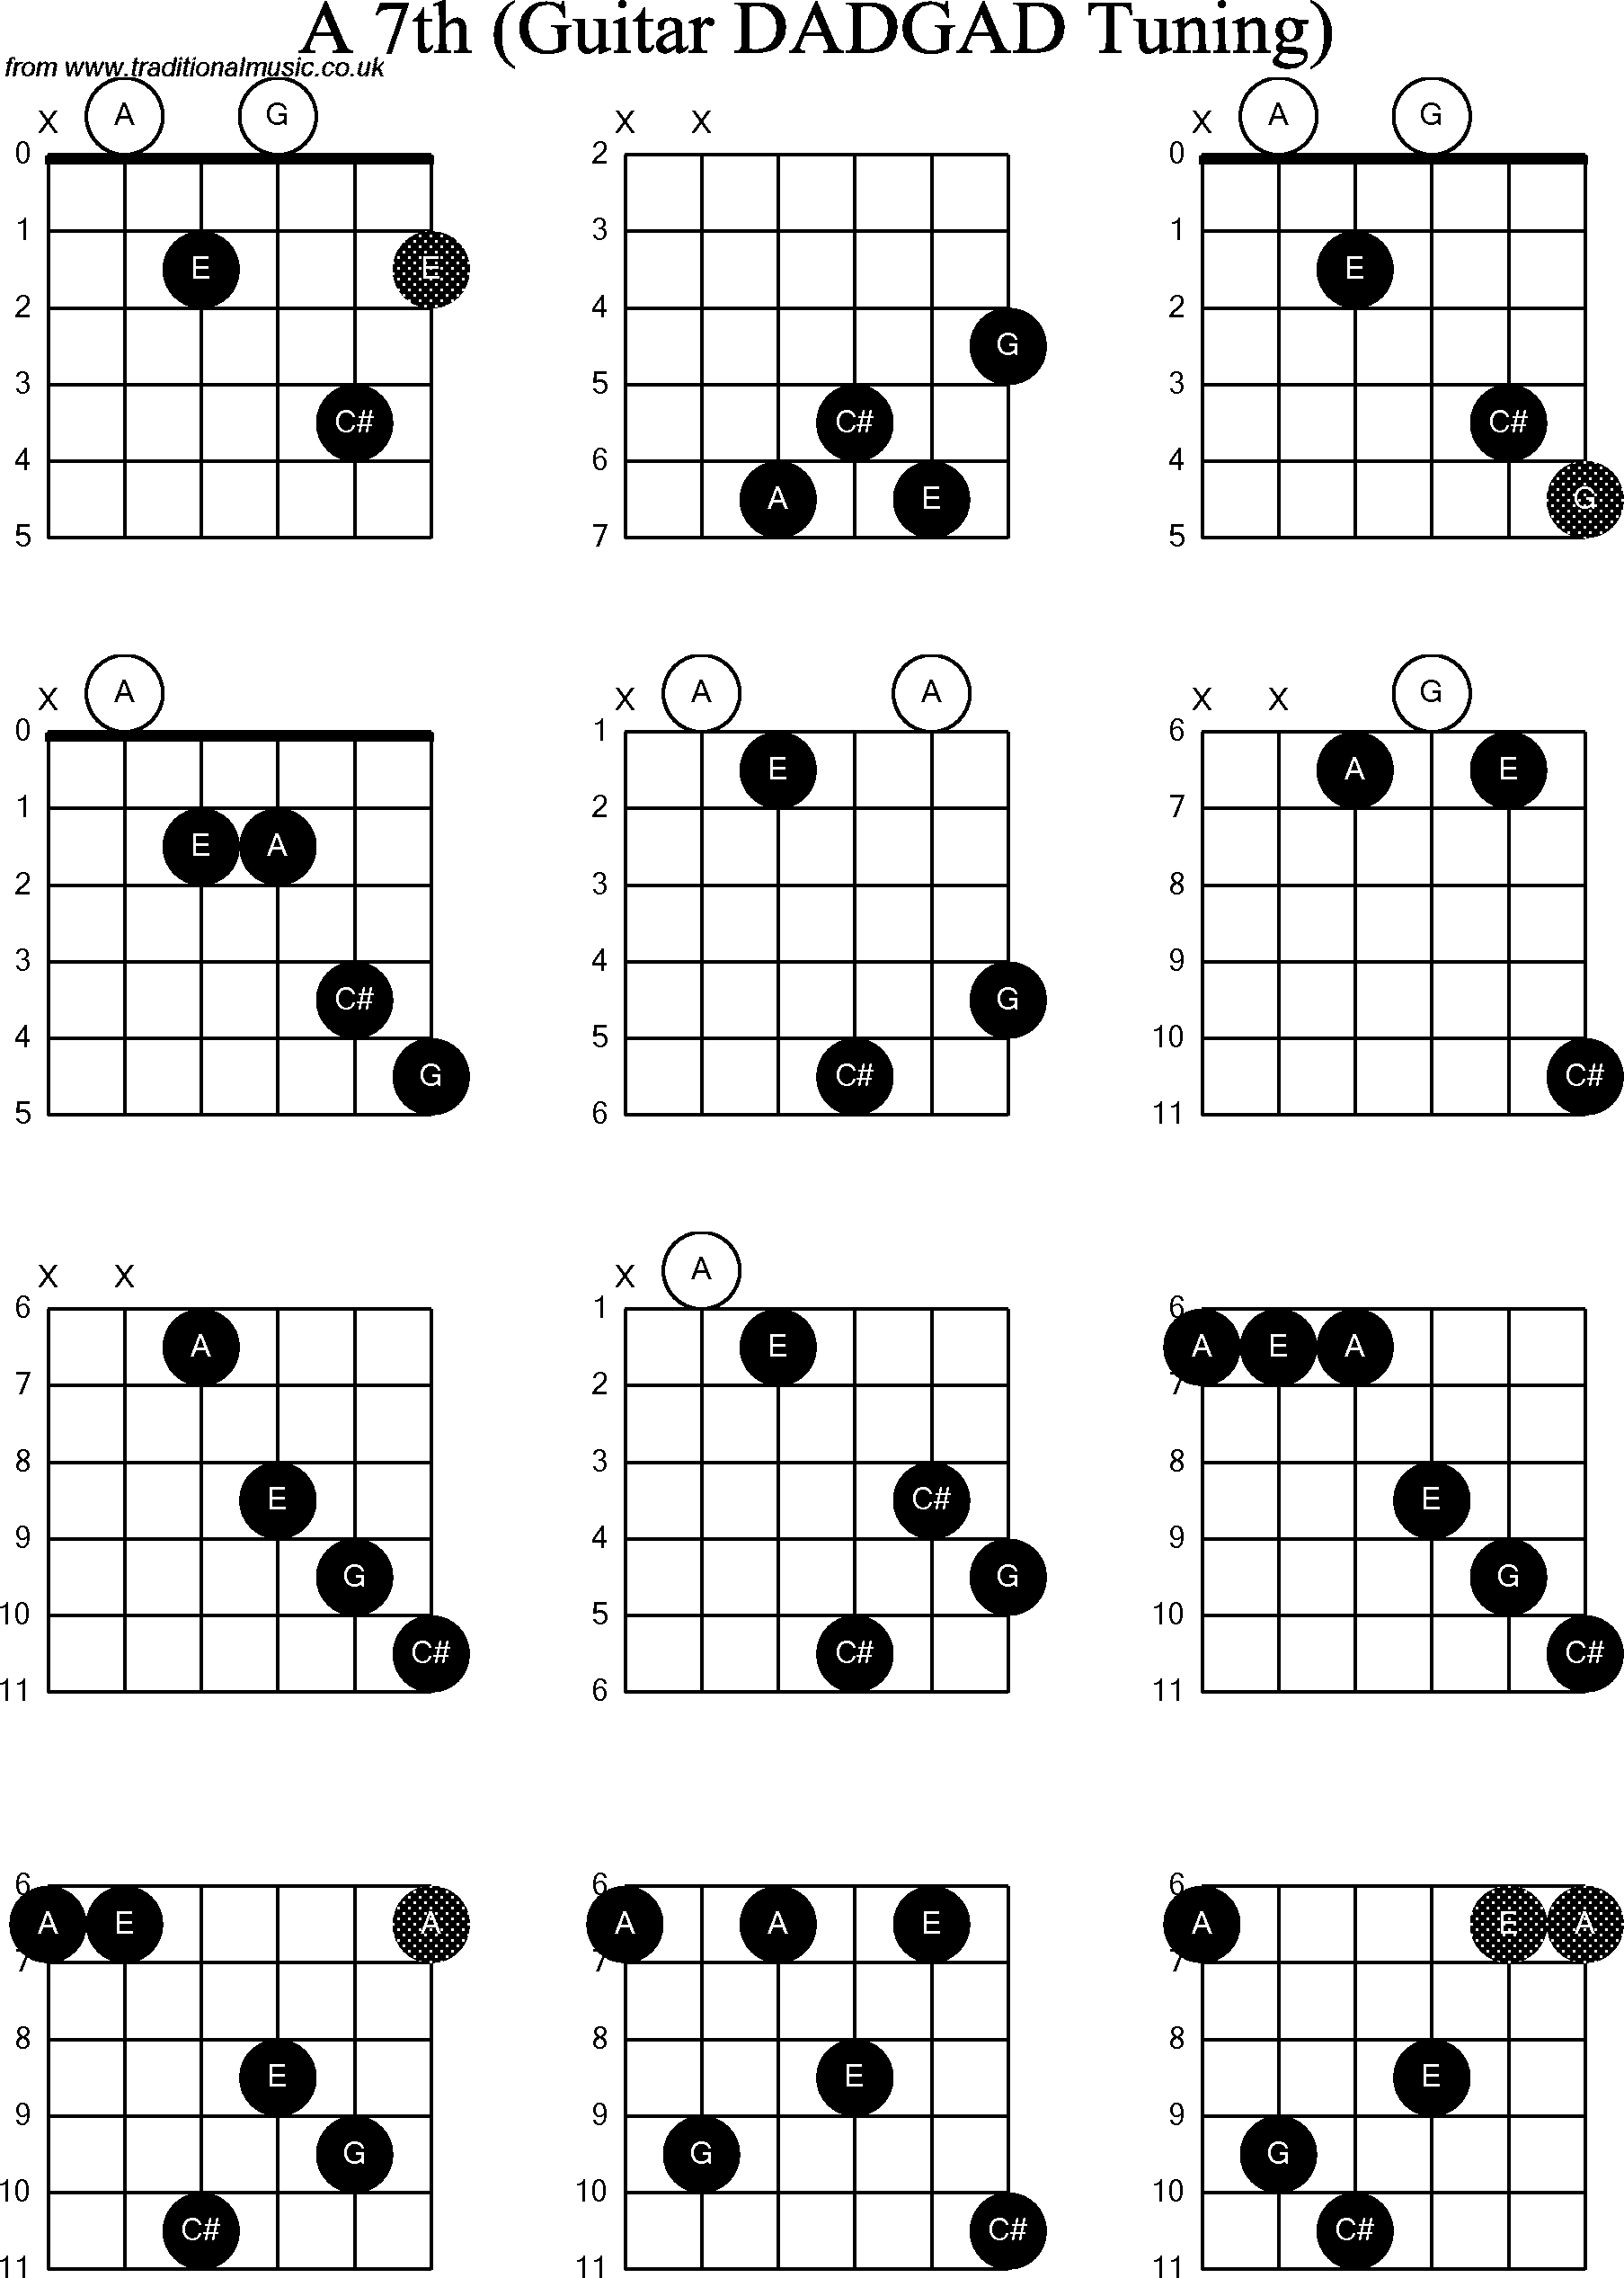 Chord Diagrams for D Modal Guitar(DADGAD), A7th